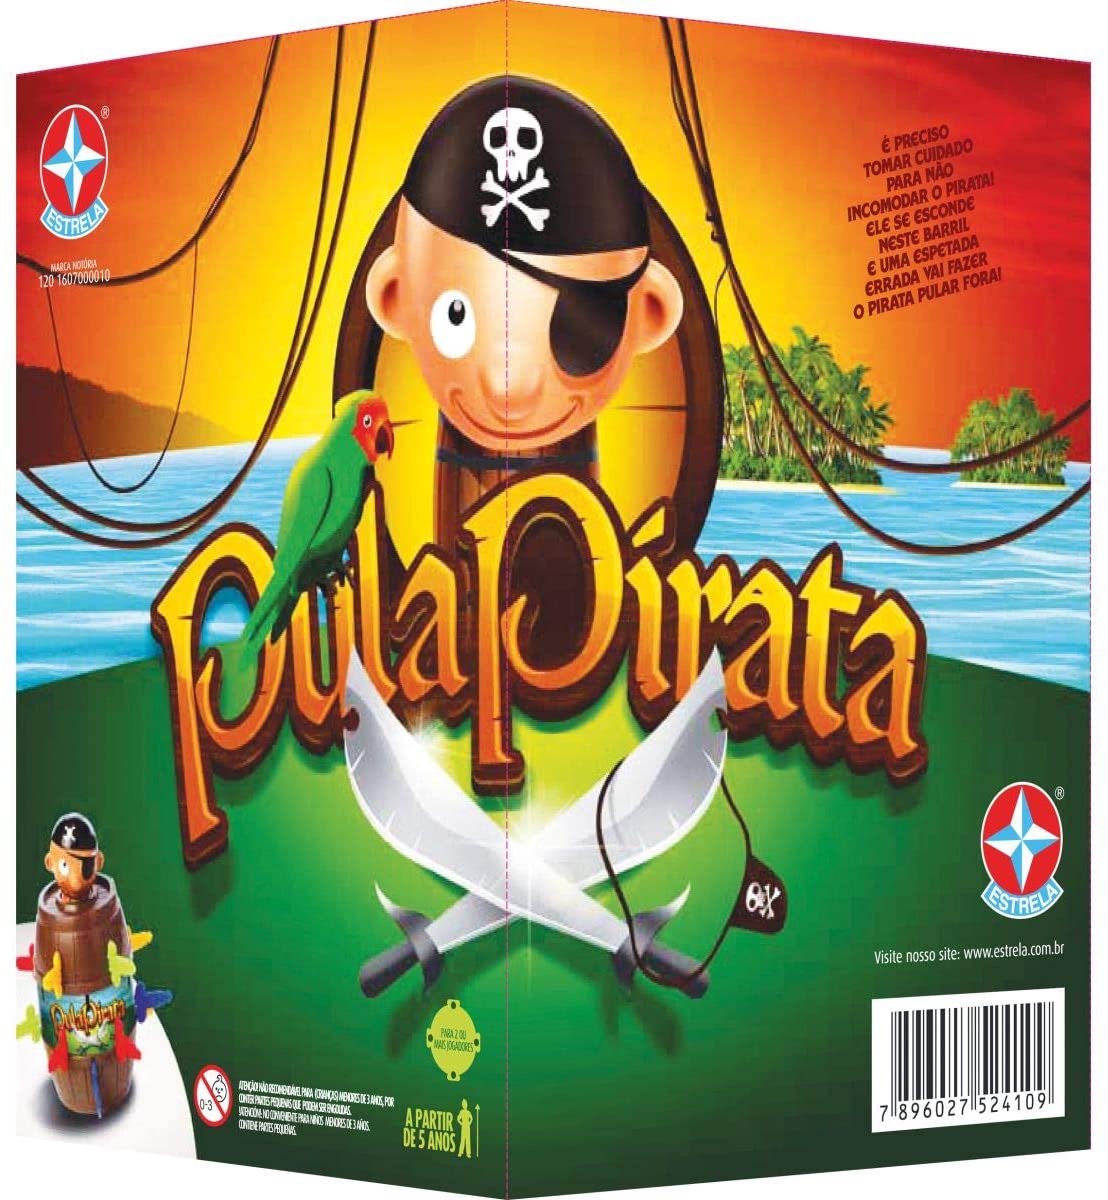 Pirata Games BR